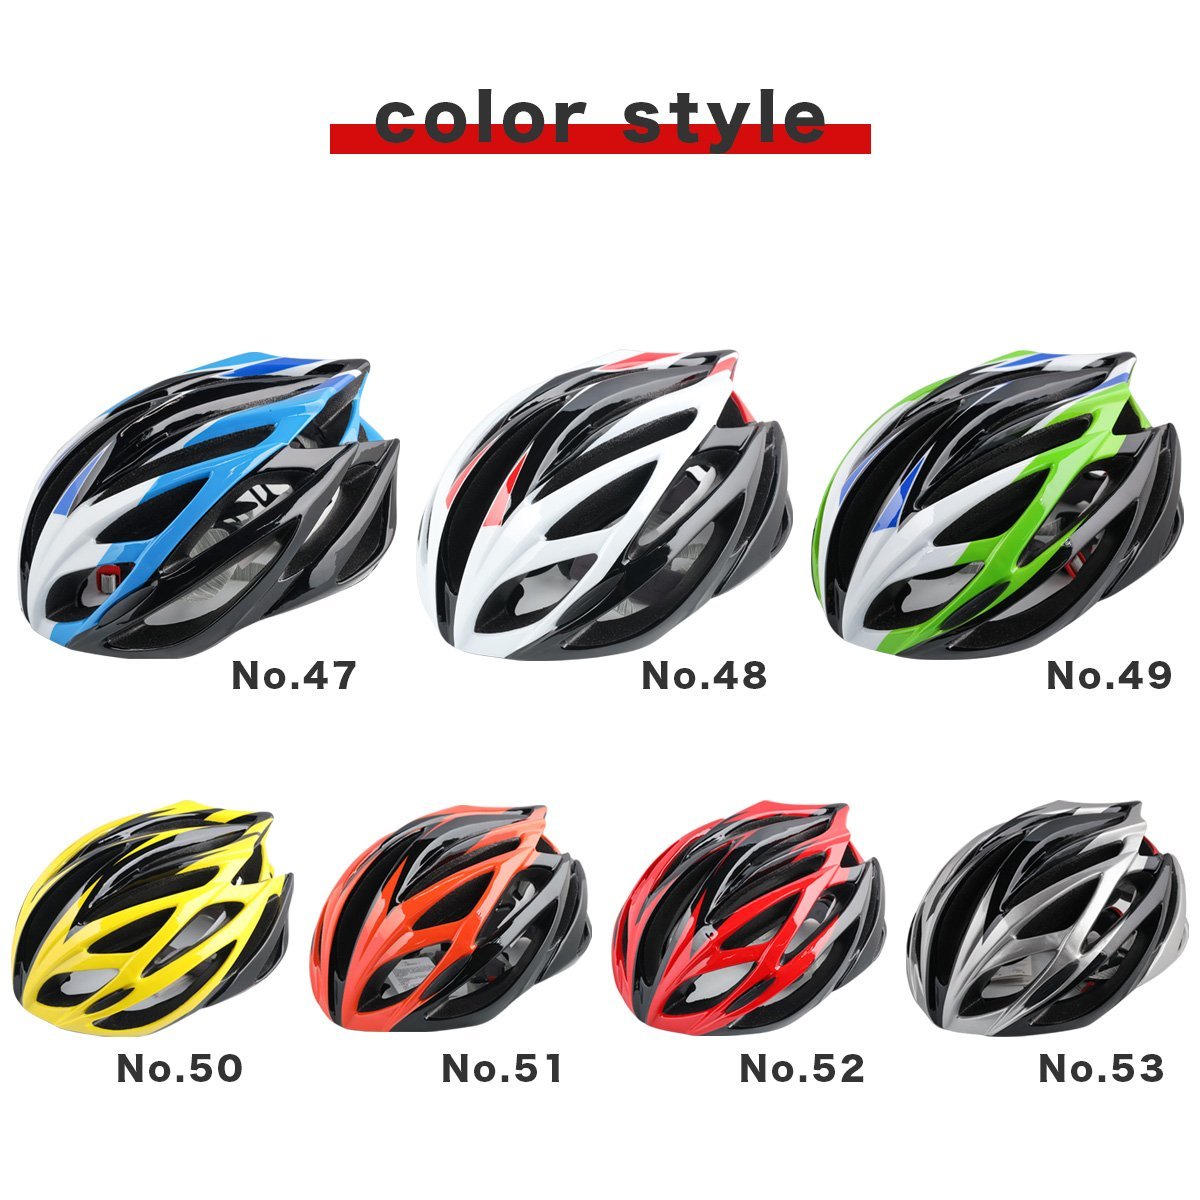 * бесплатная доставка CE стандарт засвидетельствование стильный . простой . дизайн супер-легкий улица езда предназначенный велосипедный шлем мужчина женщина ребенок из взрослый до соответствующий!7 выбор цвета 